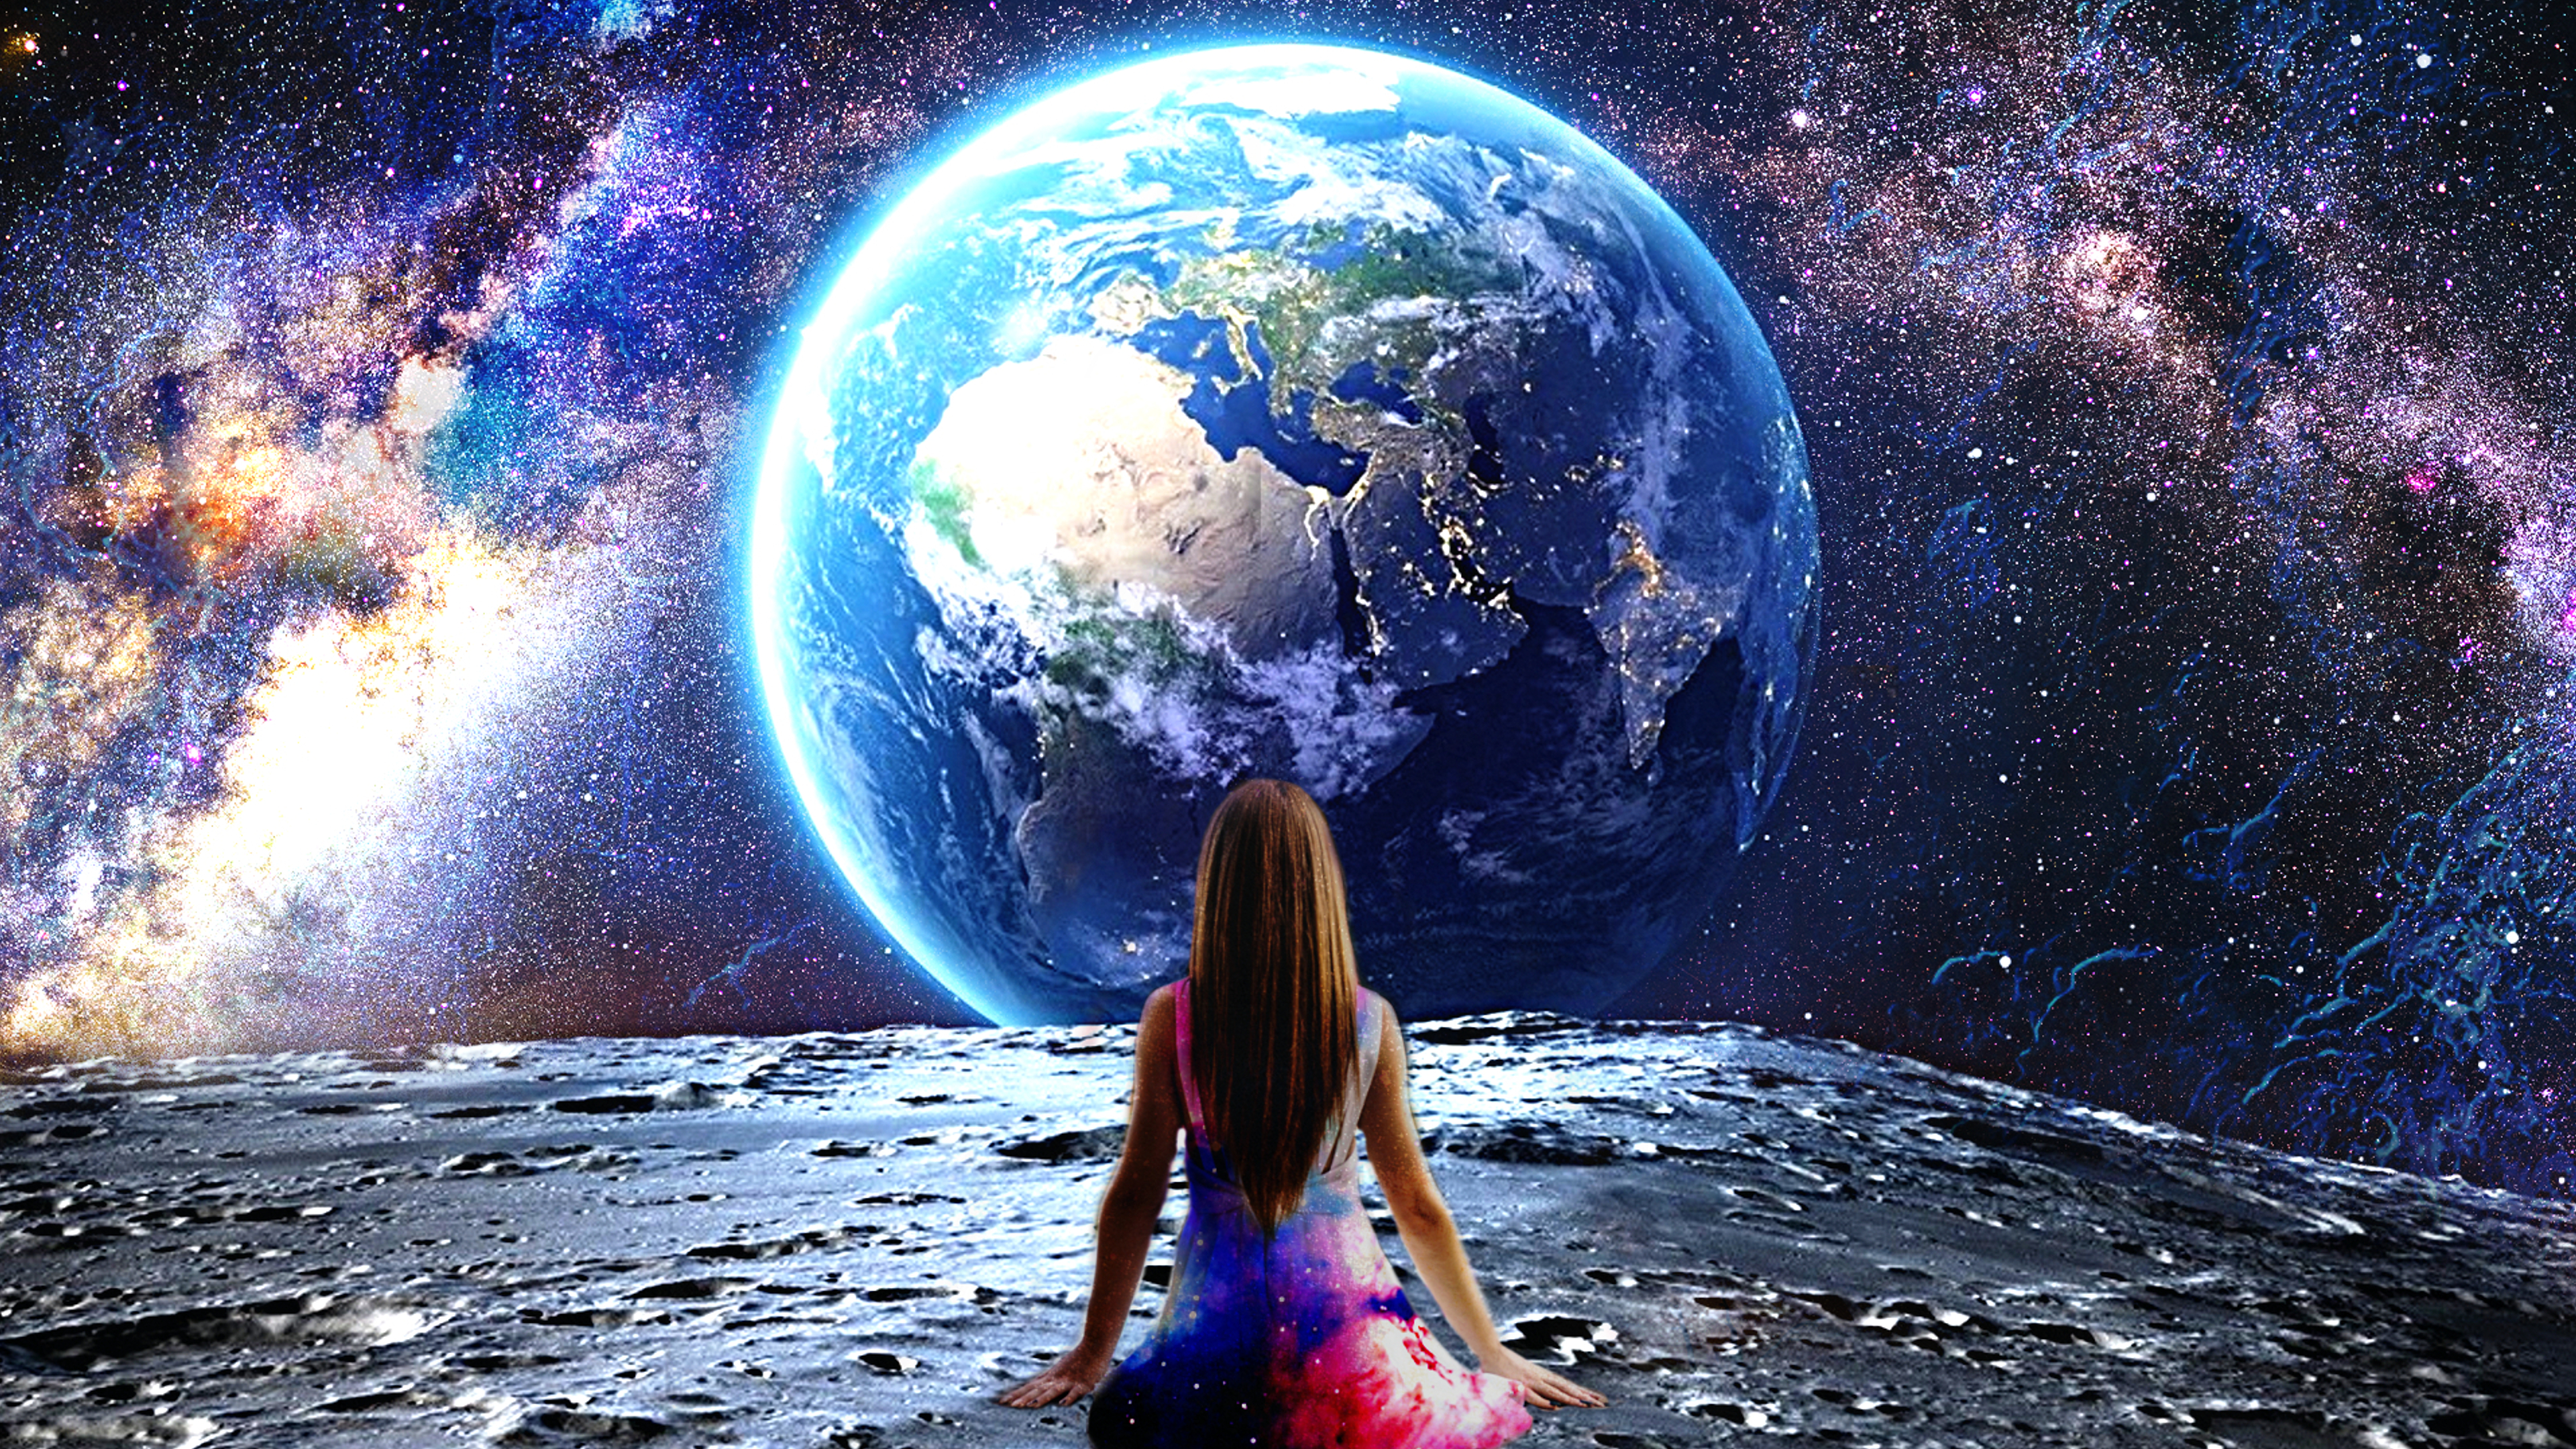 Скачать обои бесплатно Космос, Звезды, Луна, Земля, Женщины, Научная Фантастика картинка на рабочий стол ПК